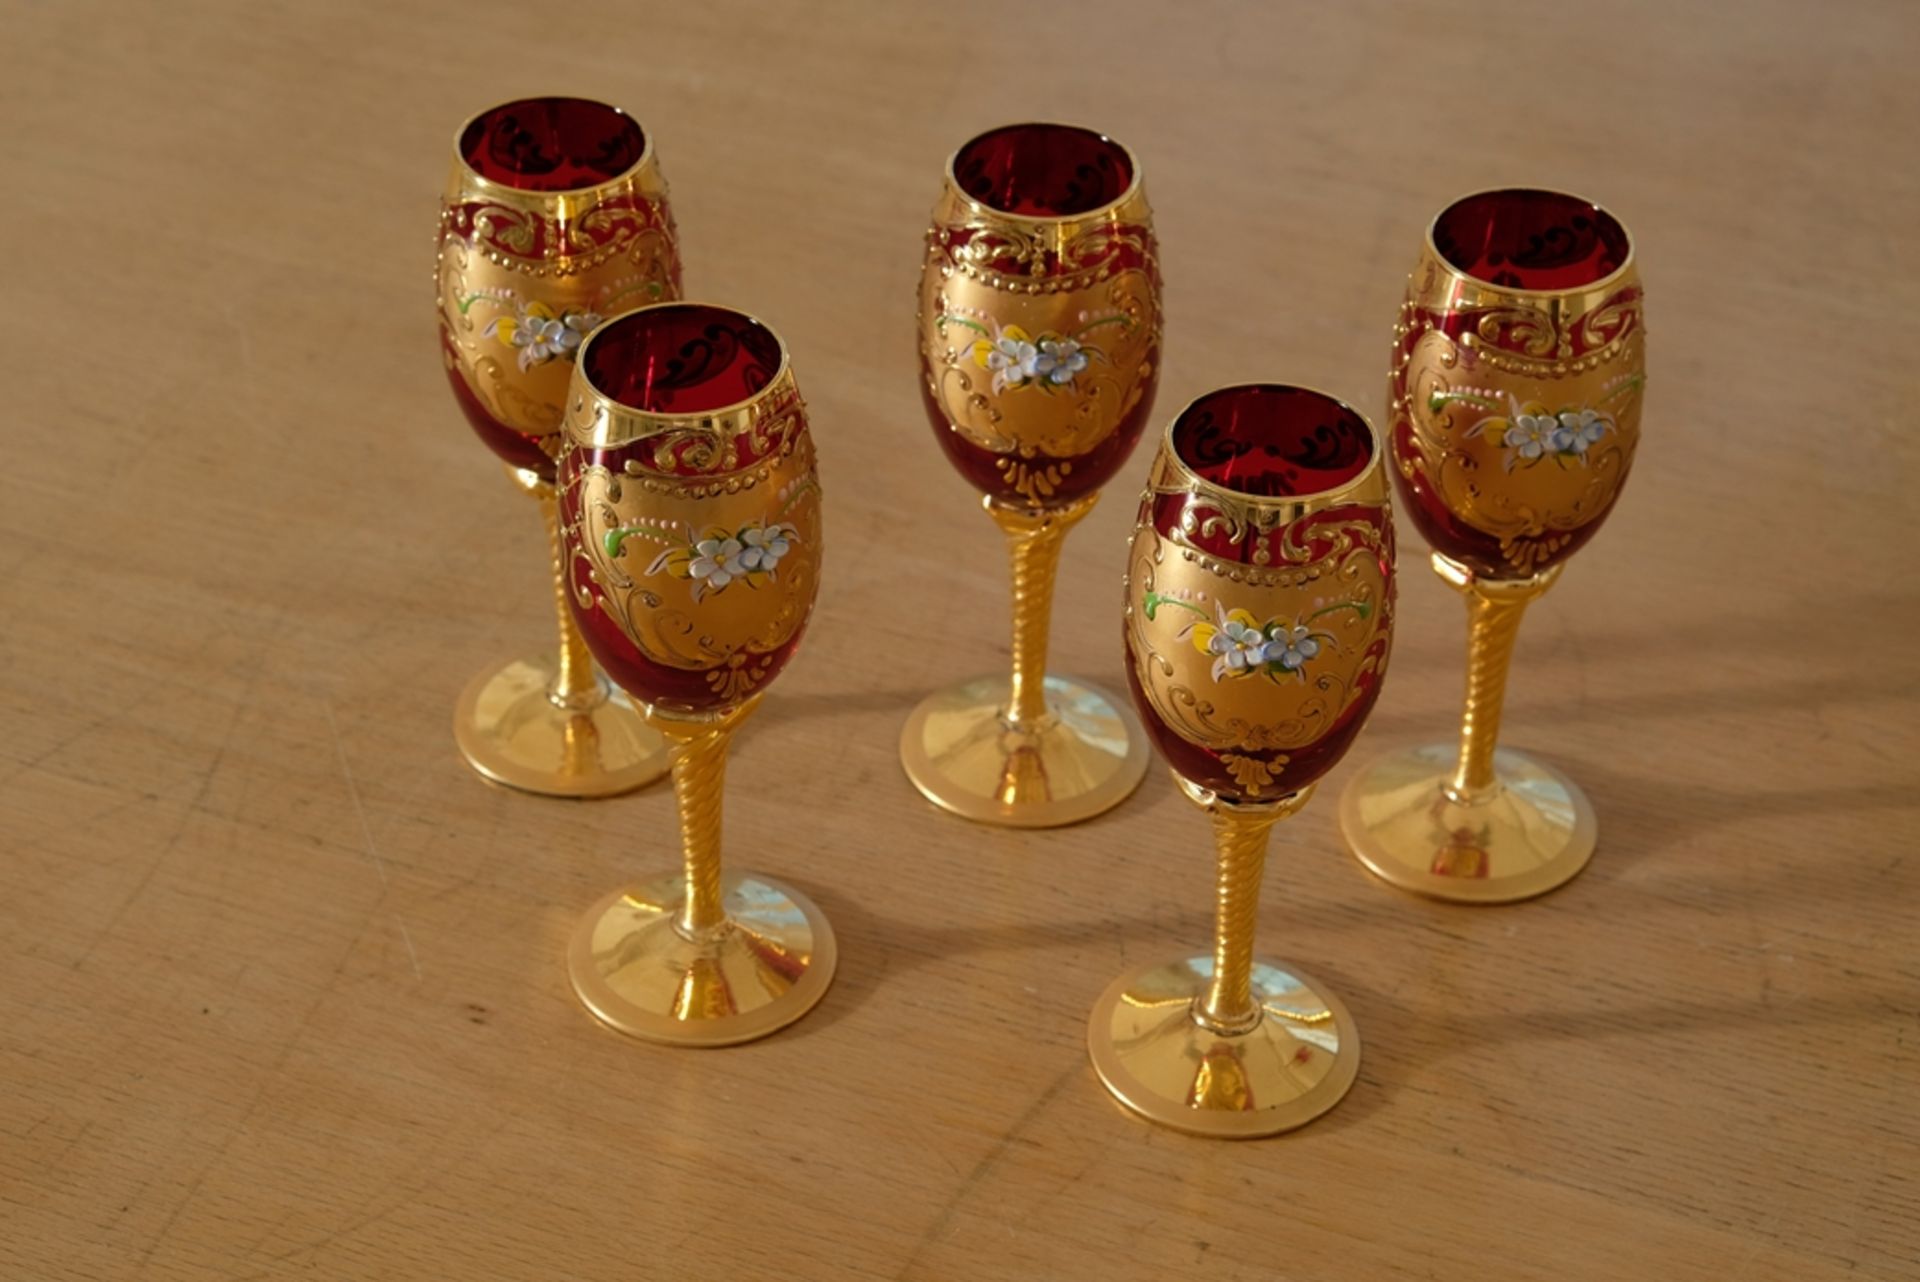 Sechs Weingläser Murano, Trefuochi, originale venezianische Weingläser, rubinrotes Glas, Blattgold  - Bild 2 aus 4